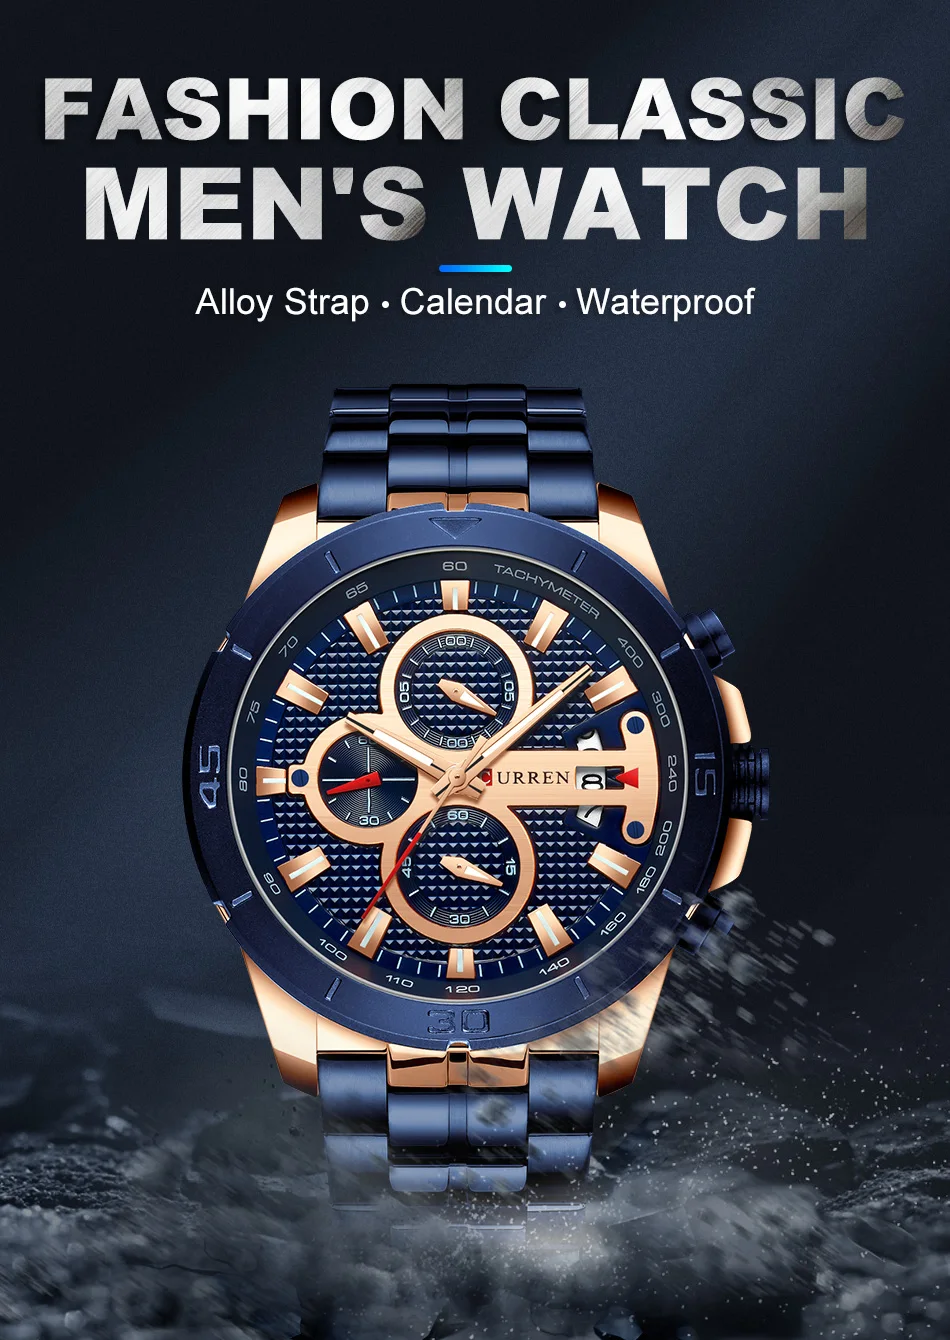 CURREN Элитный бренд Нержавеющая сталь спортивные часы Для мужчин хронограф Наручные часы модные Повседневное Дата кварцевые часы Для мужчин s часы